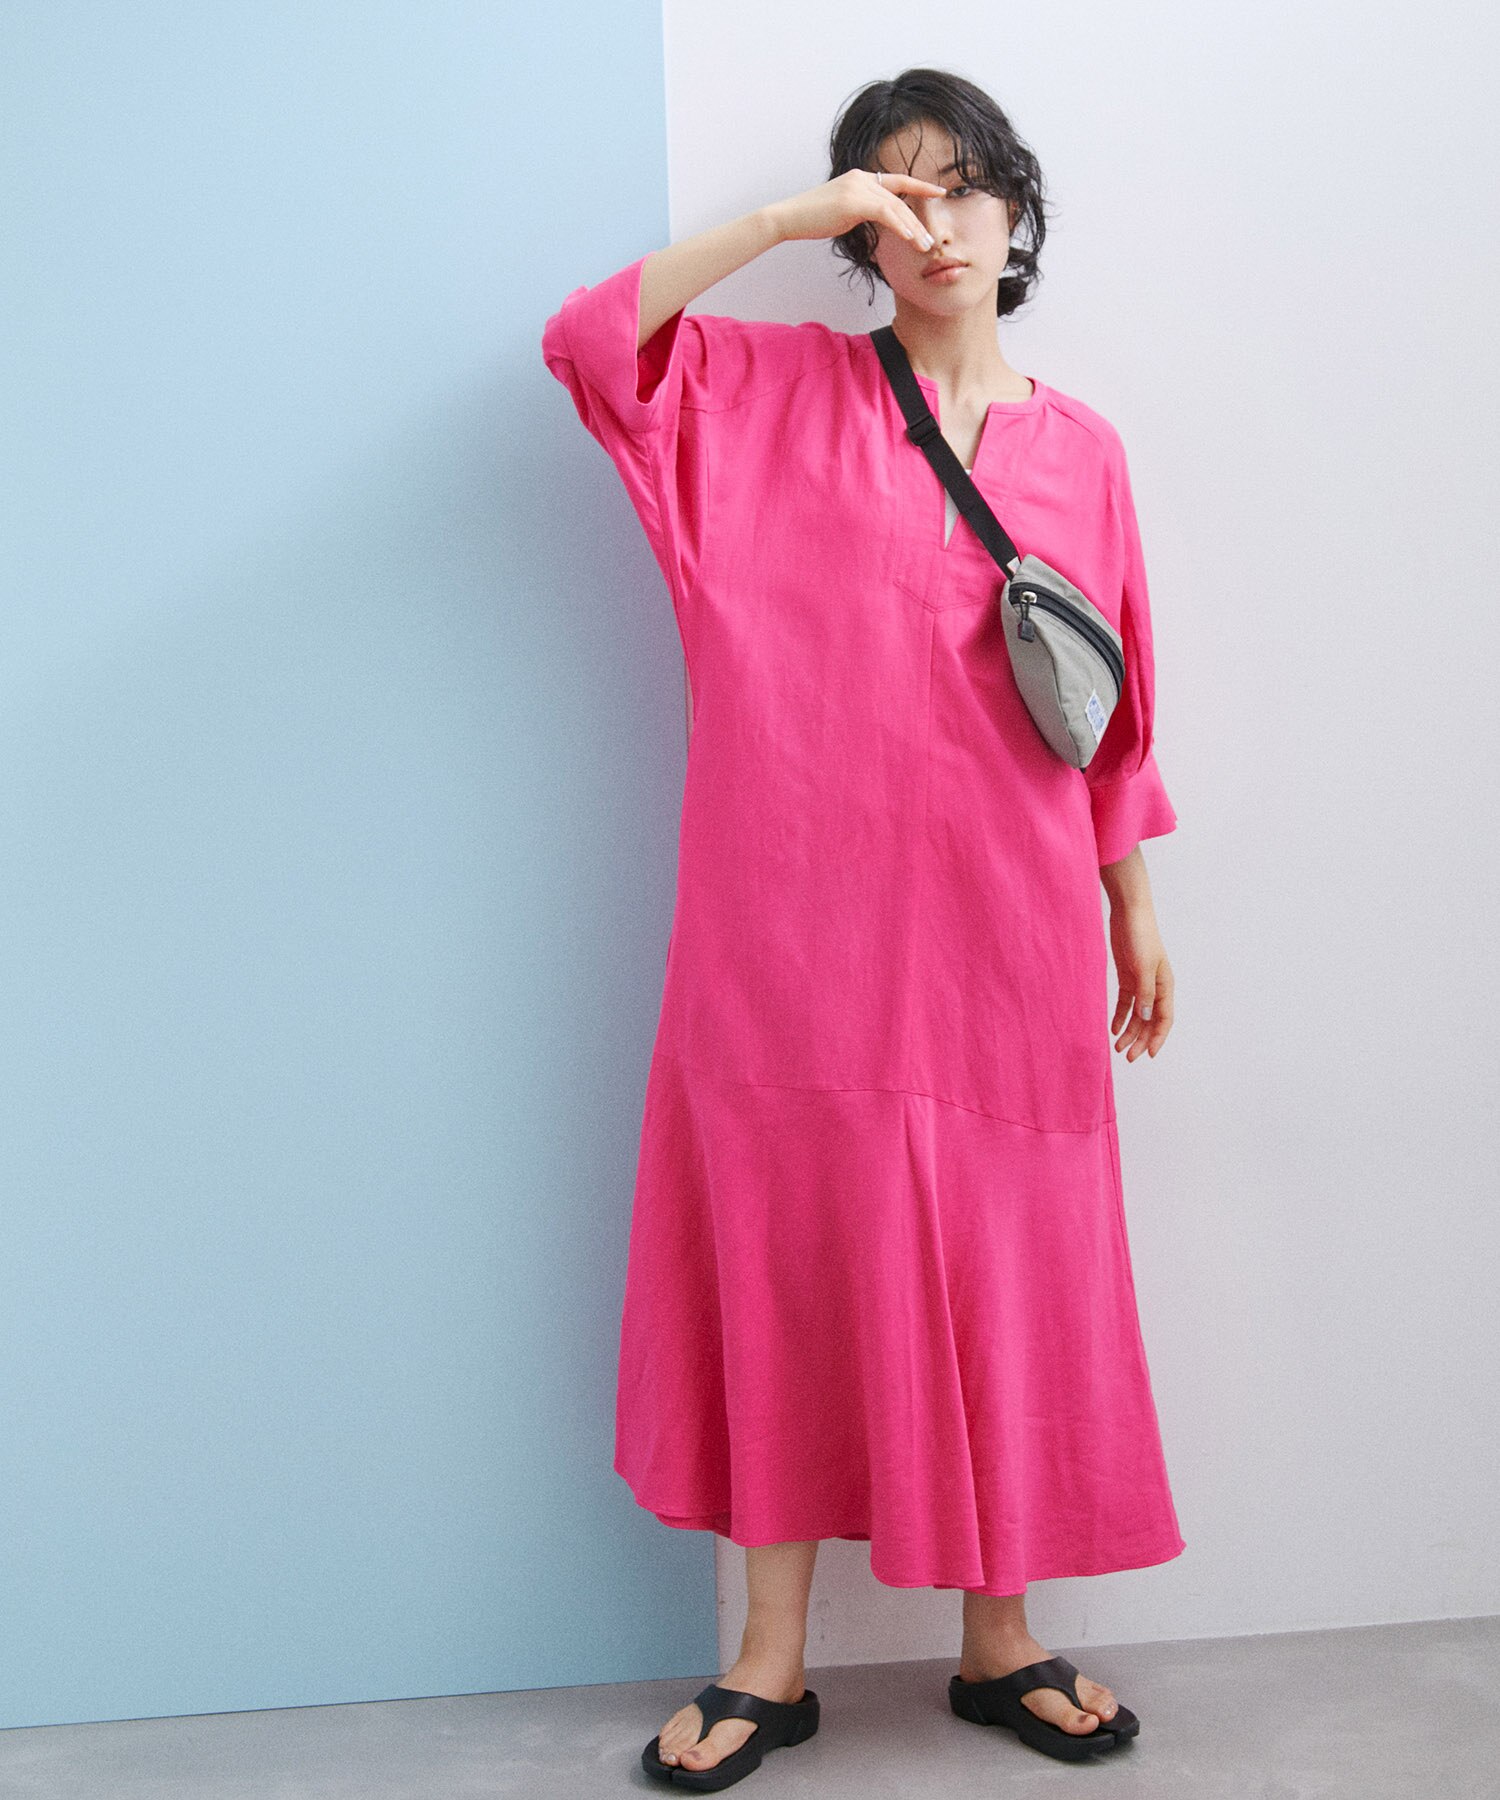 【新品!タグ付き】ROPE ワンピース ドレス ピンク